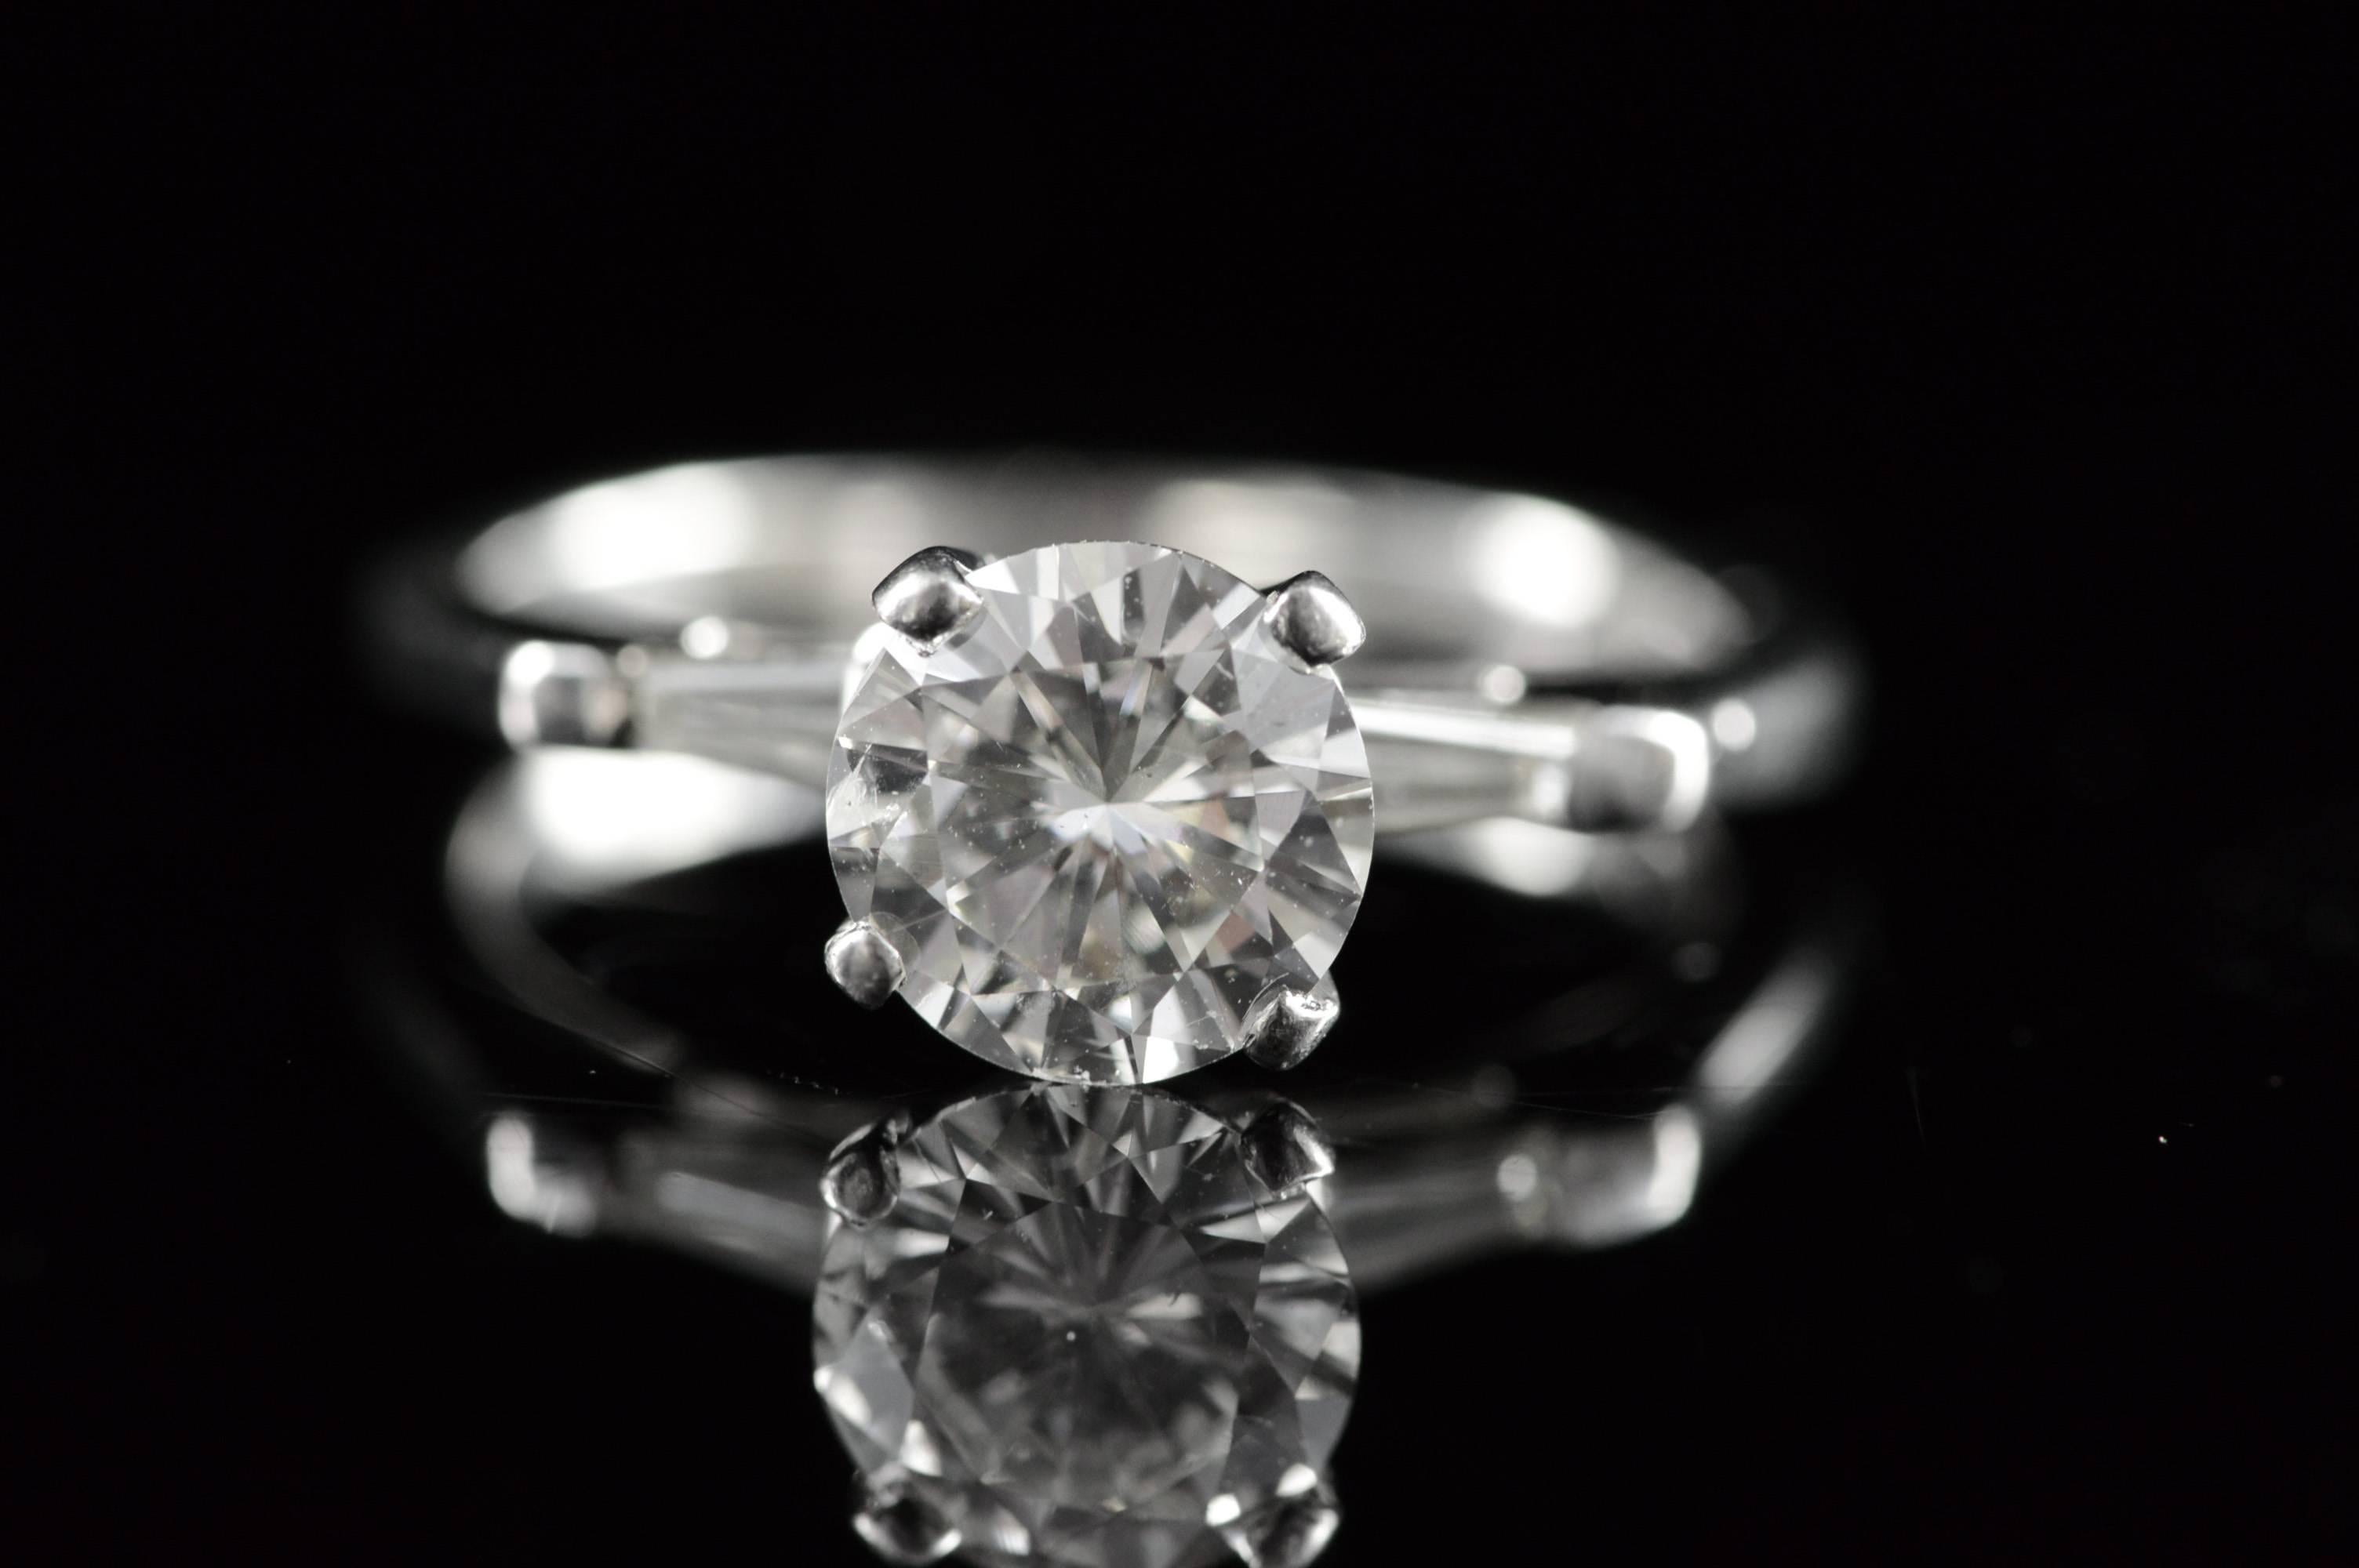 ·Item: Platinum IGI 1.34 Round I SI2 1.59 CTW Baguette Accent Antique Diamond Engagement Ring - Size 5 /

·Era: 1930s

·Composition: Platinum Marked

·Gem Stone: IGI 1.34 Round I SI2, 2x Diamonds, 2x Diamonds=0.25ctw H/SI

·Condition: Estate